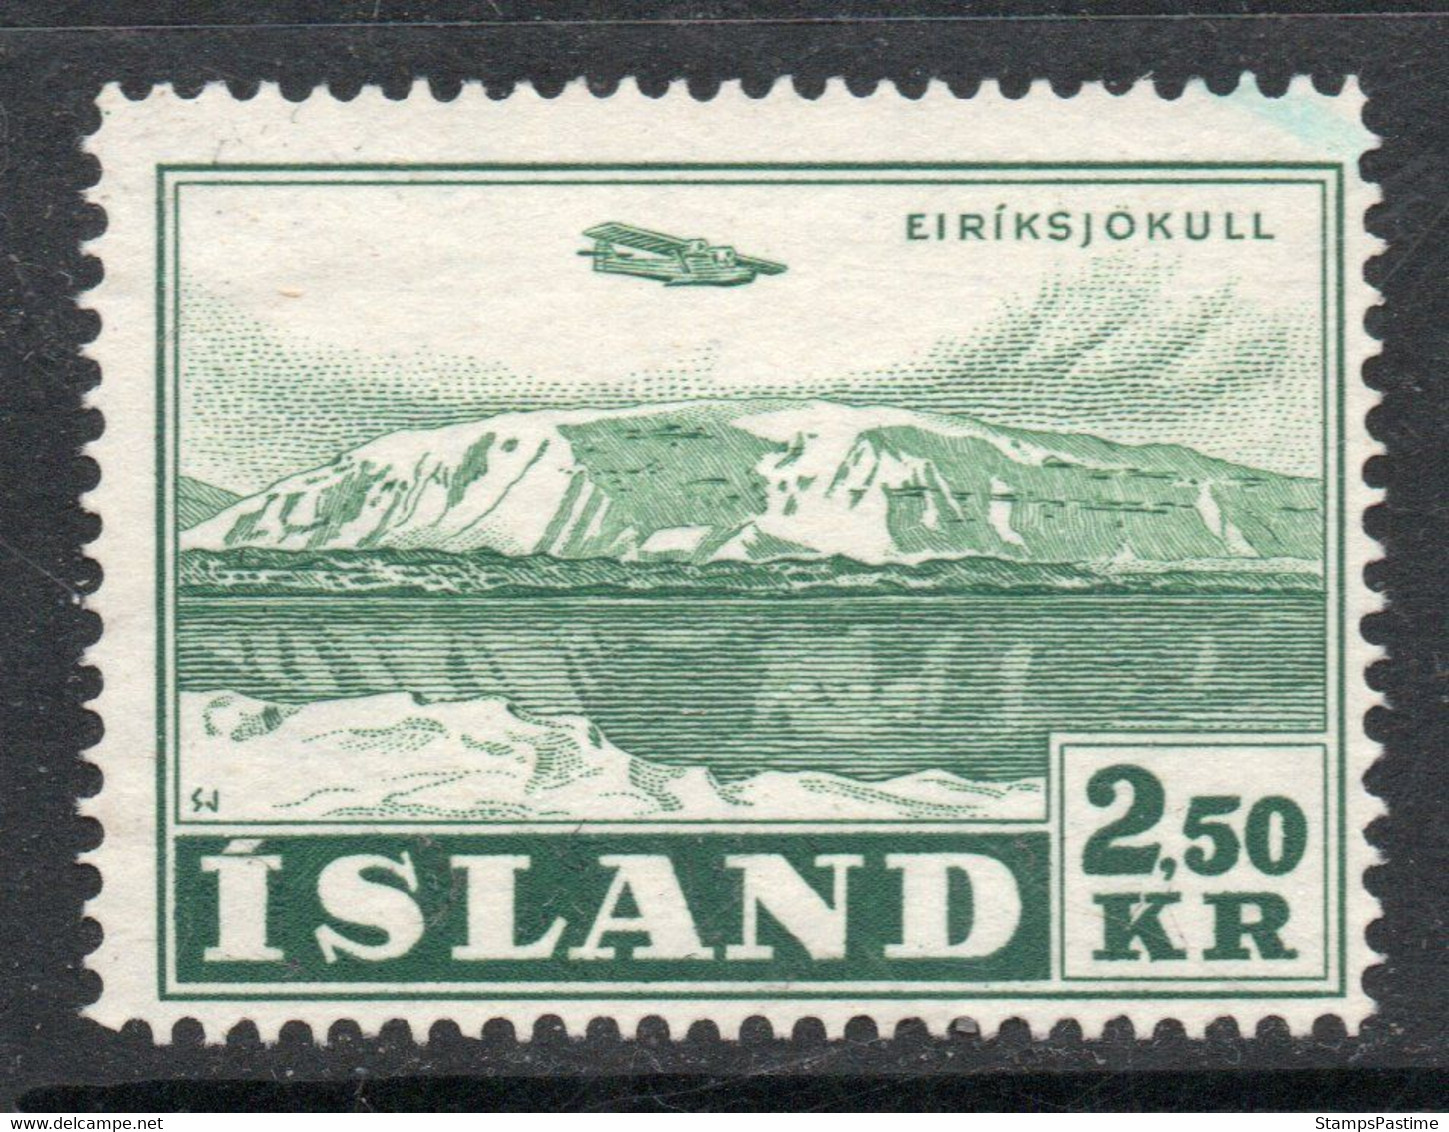 ISLANDIA – ICELAND Sello Aéreo Nuevo Sin Goma HIDROAVIÓN = GLACIAR X 2,50 Kr. Año 1952 – Valorizado En Catálogo € 35,00 - Luchtpost